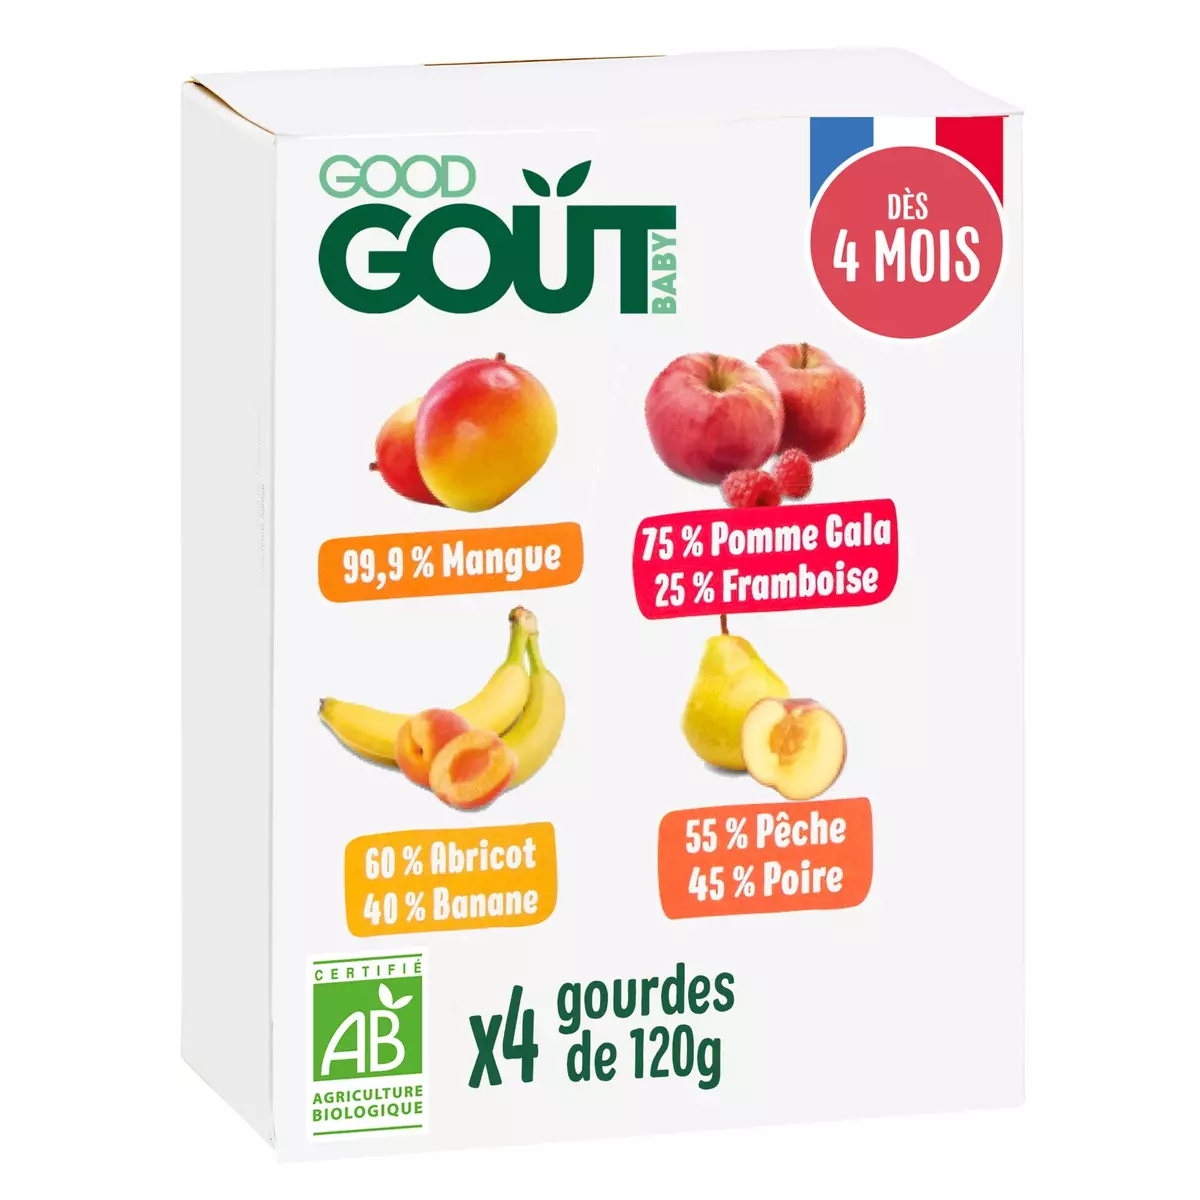 Good Gout Compote de mangue bio en gourde - Dessert Bébé dès 4 mois